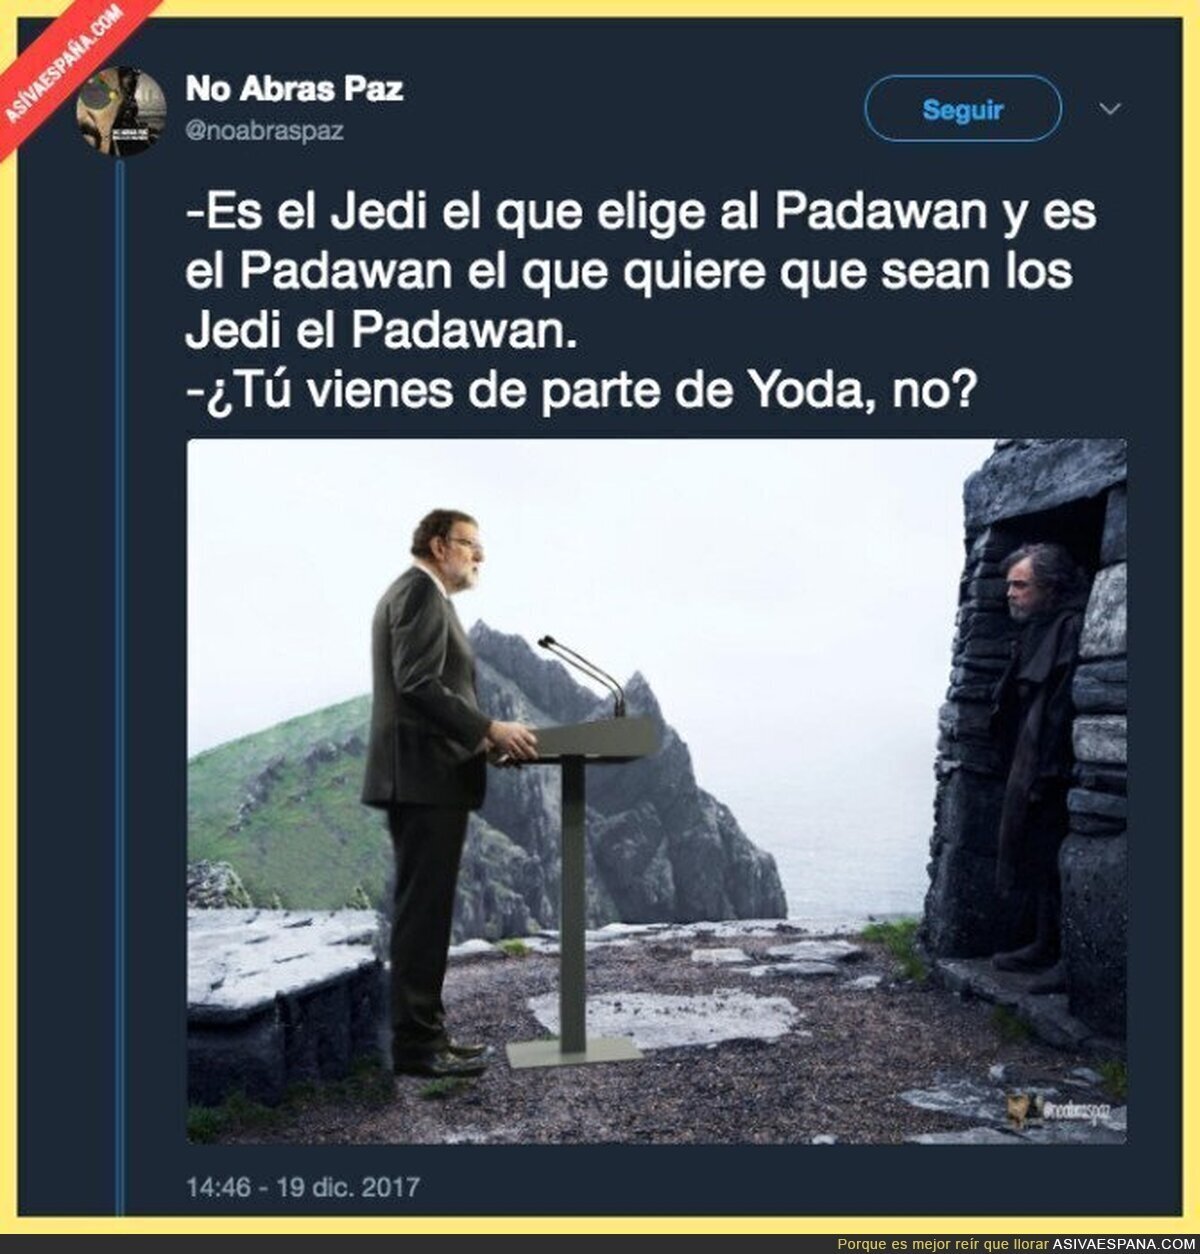 Rajoy en el universo Star Wars